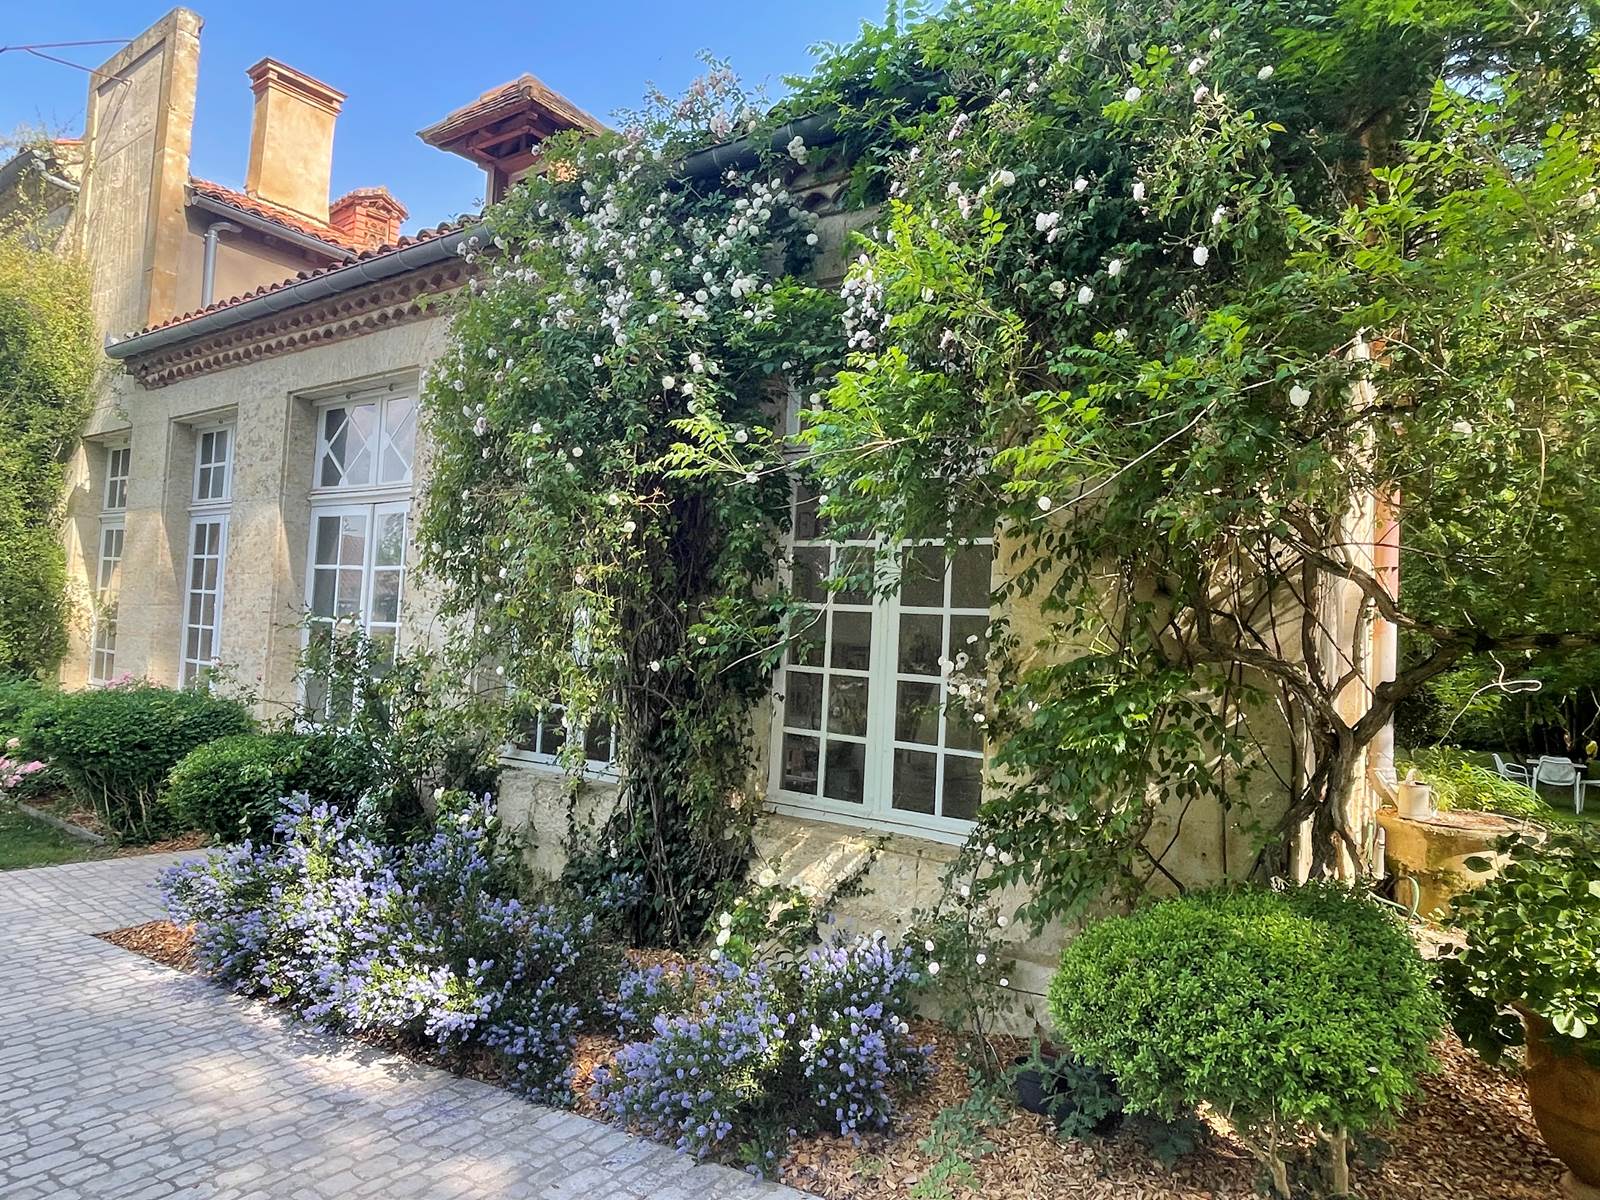 Jardin et orangerie, écrin de verdure et charme du patrimoine ancien à la Maison Gascony